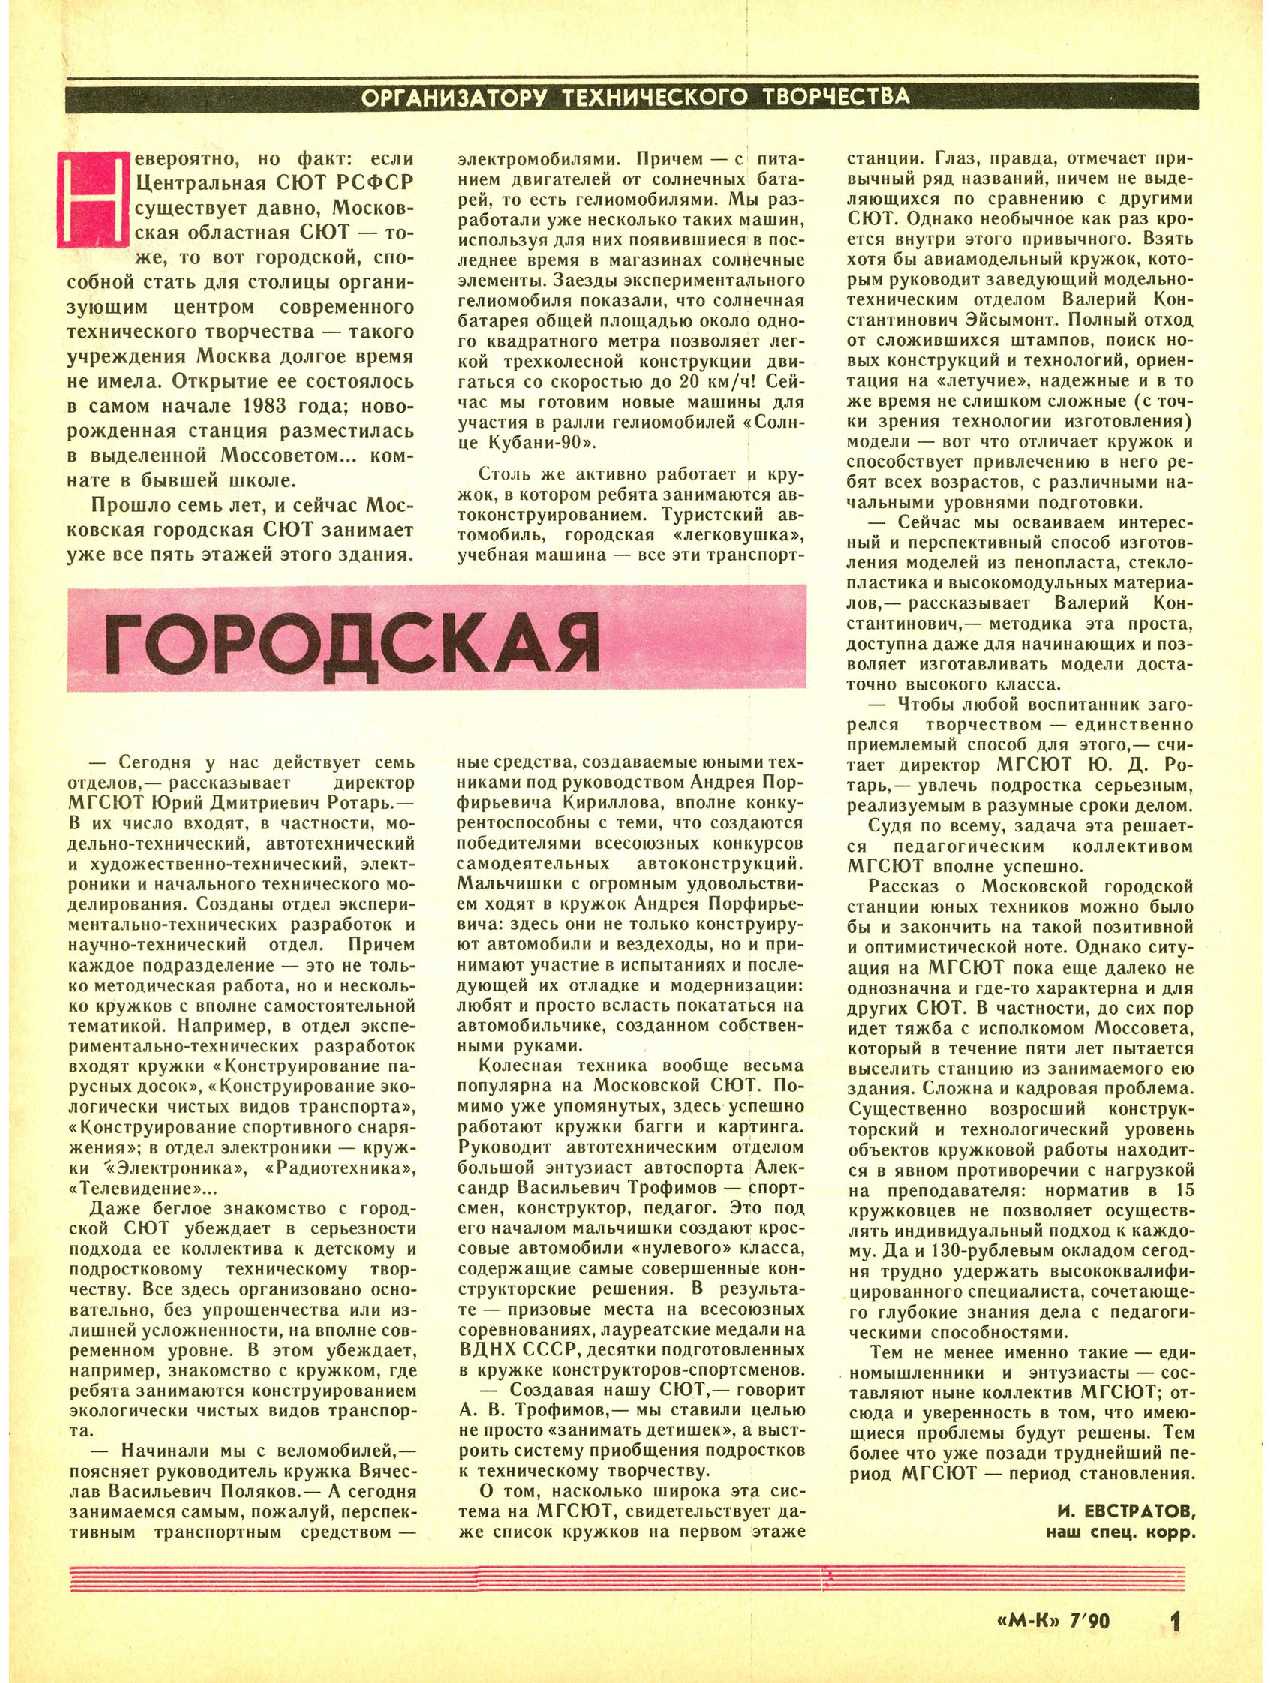 МК 7, 1990, 1 c.